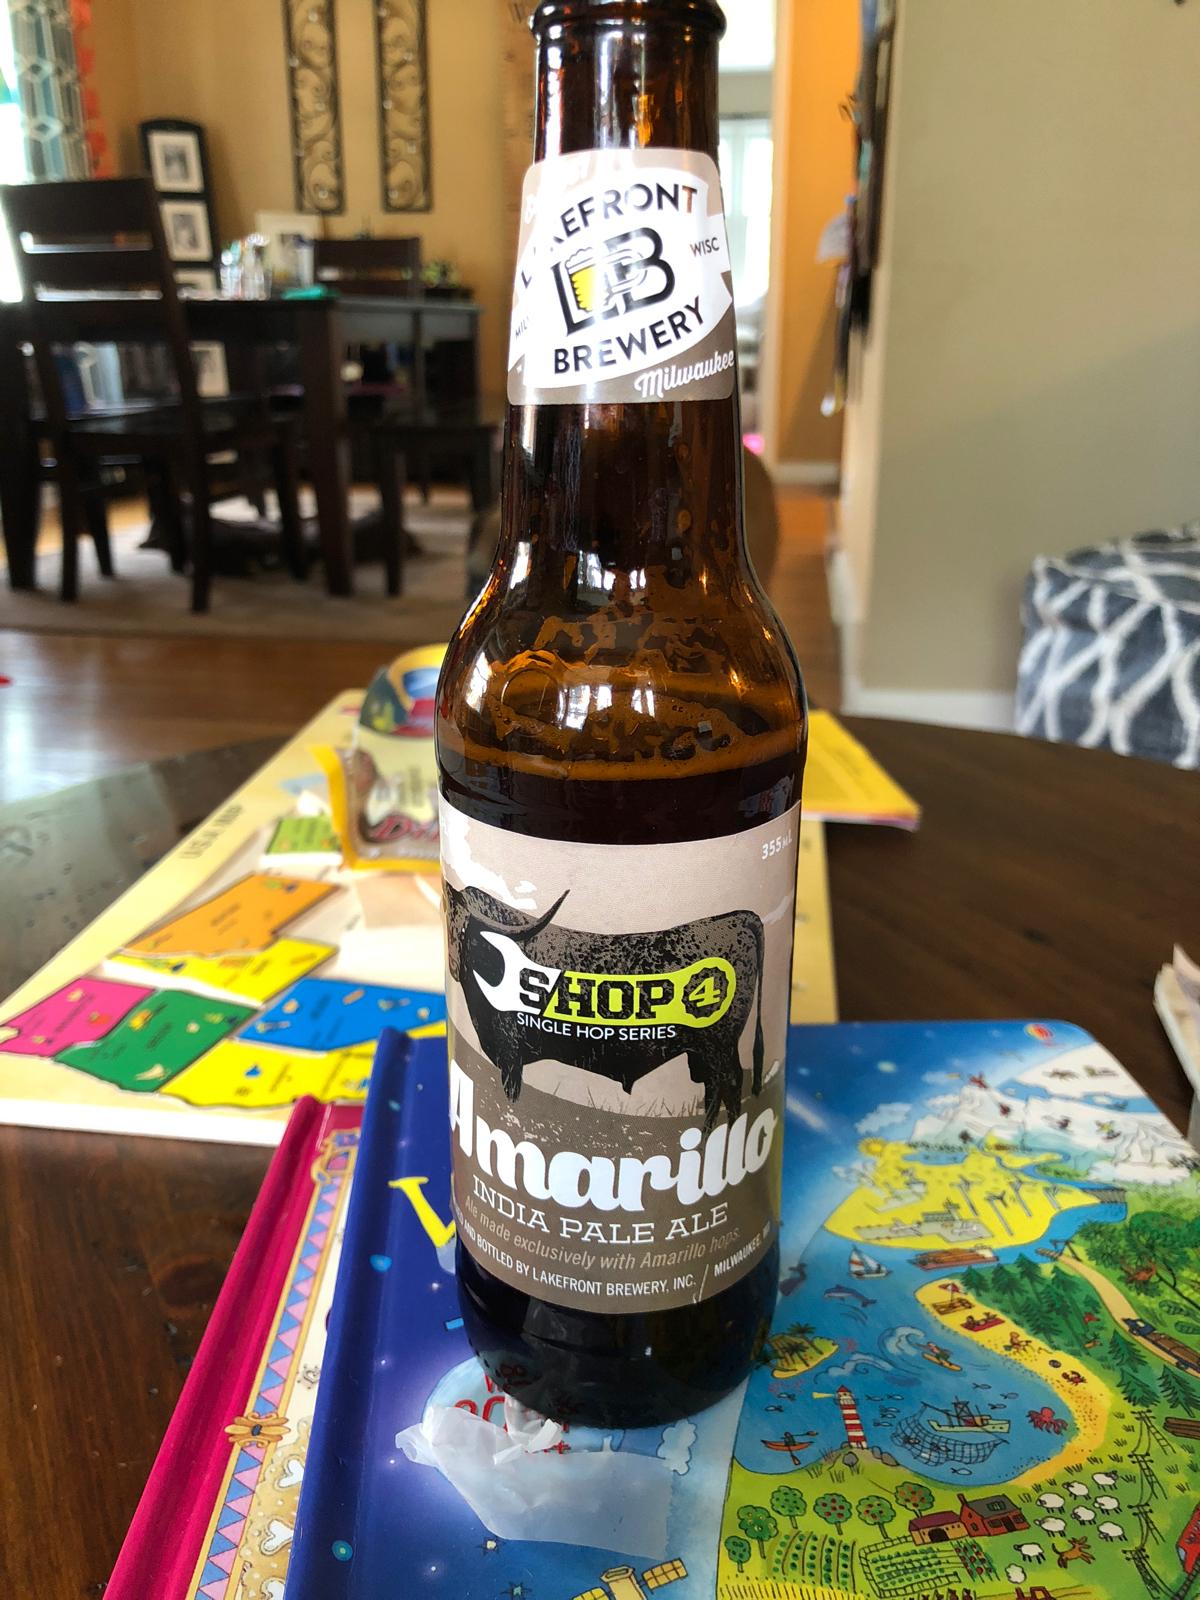 Amarillo India Pale Ale